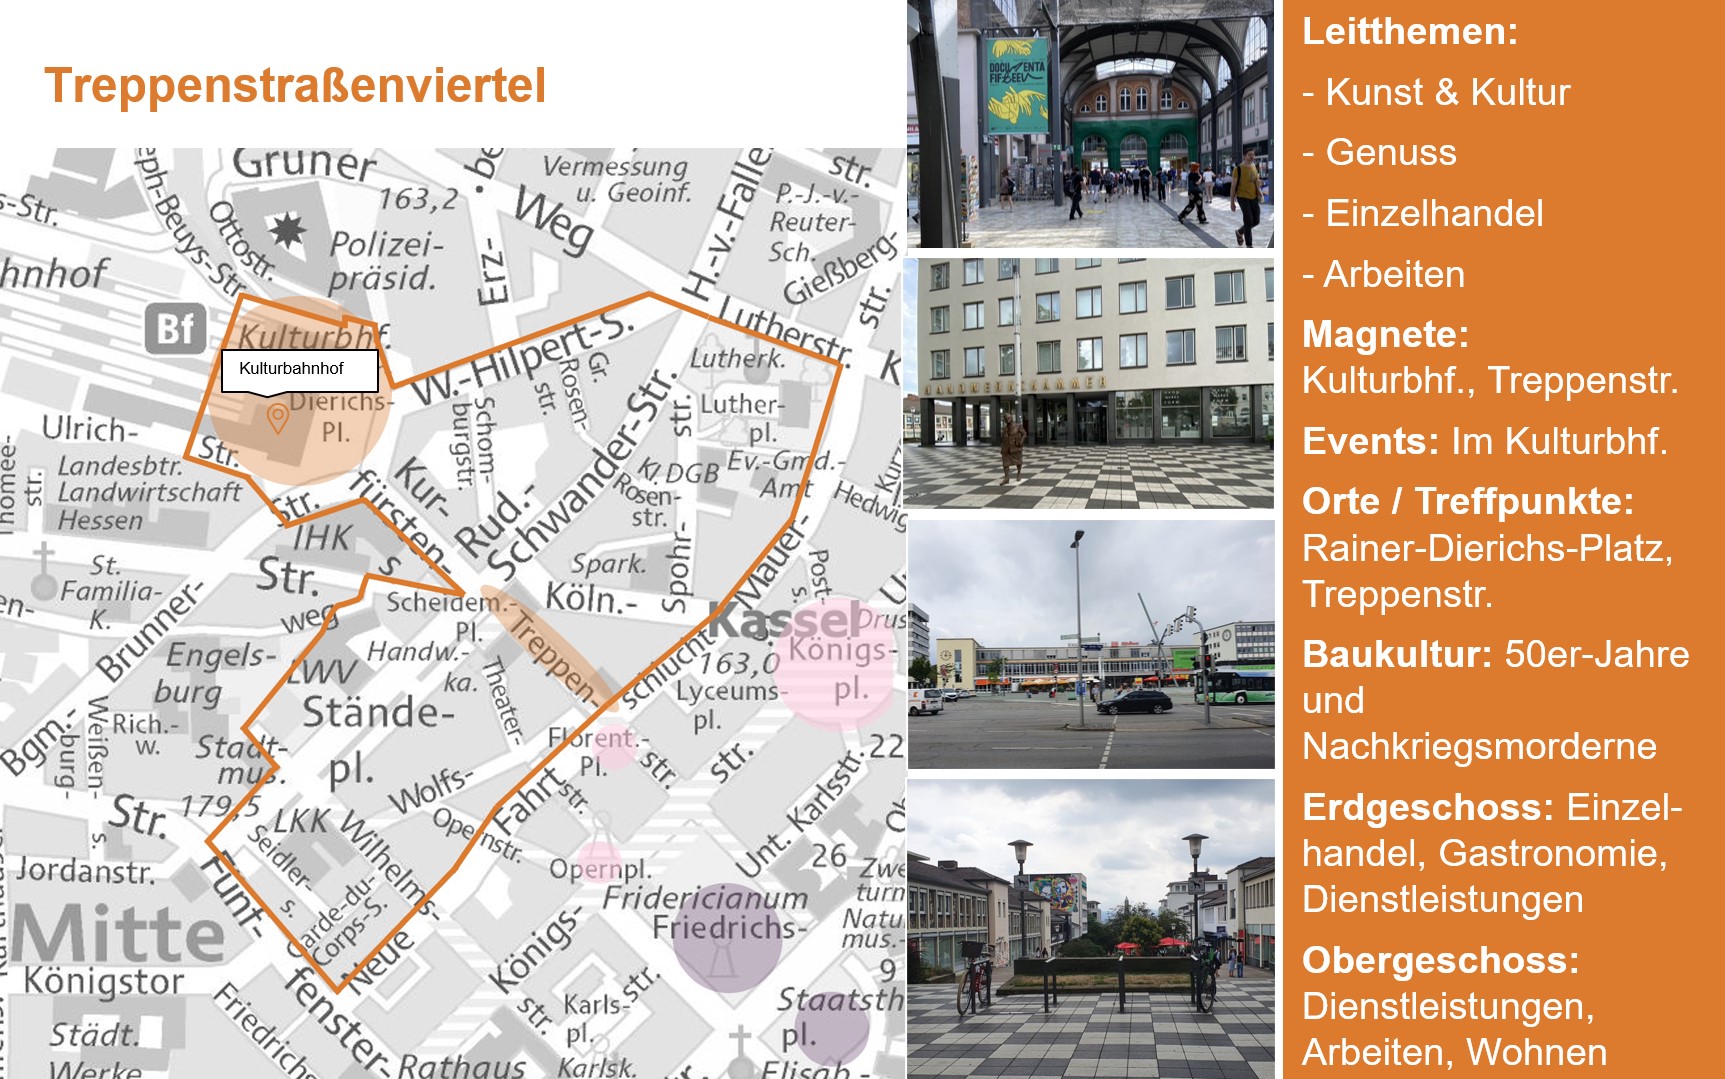 Hier befindet sich eine Bildergalerie, die sechs Teilbereiche der Kasseler Innenstadt beschreiben. Diese Teilbereiche sind: der Bereich um die Königsstraße, der Bereich um die Treppenstraße, der Bereich um die GRIMMWELT, der Friedrichsplatz, der Altstadtbereich und der Bereich um den Pferdemarkt.